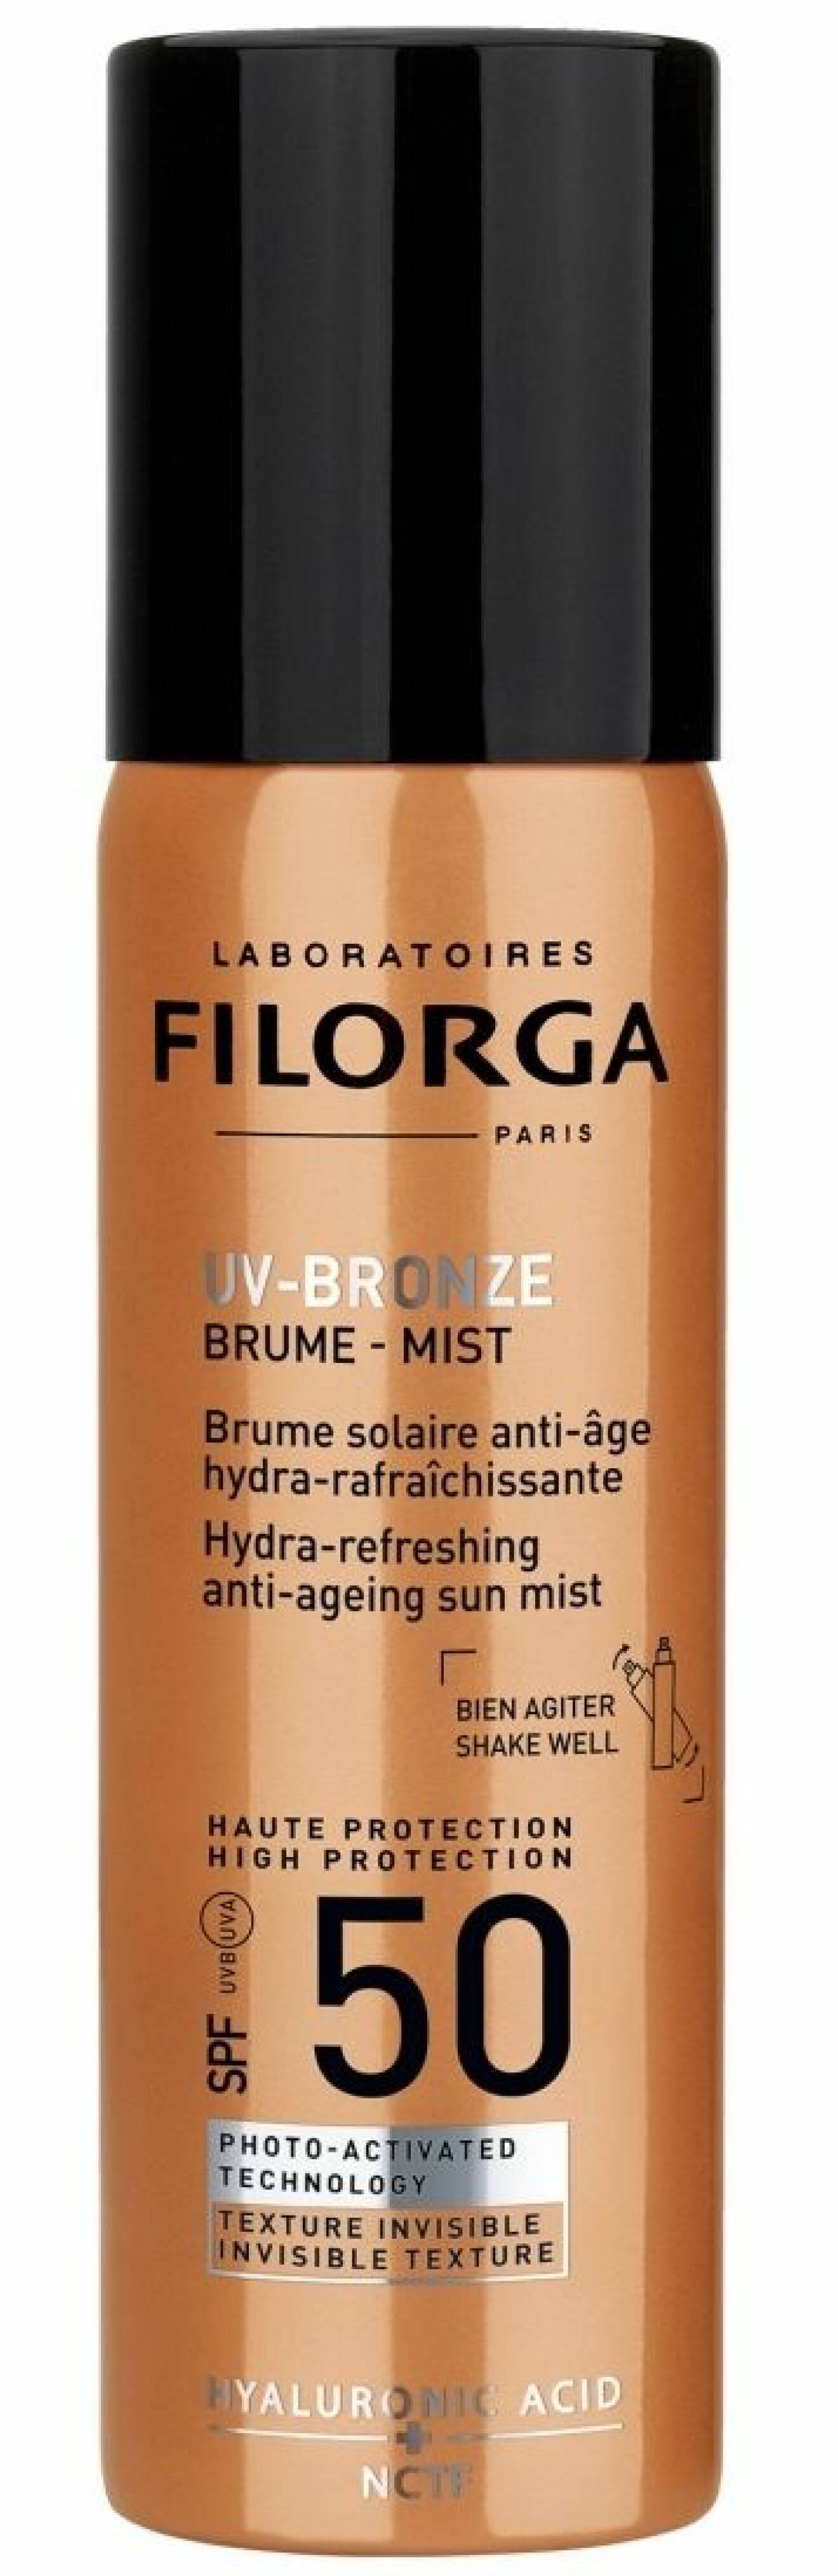 UV bronze mist SPF 50+ från Filorga